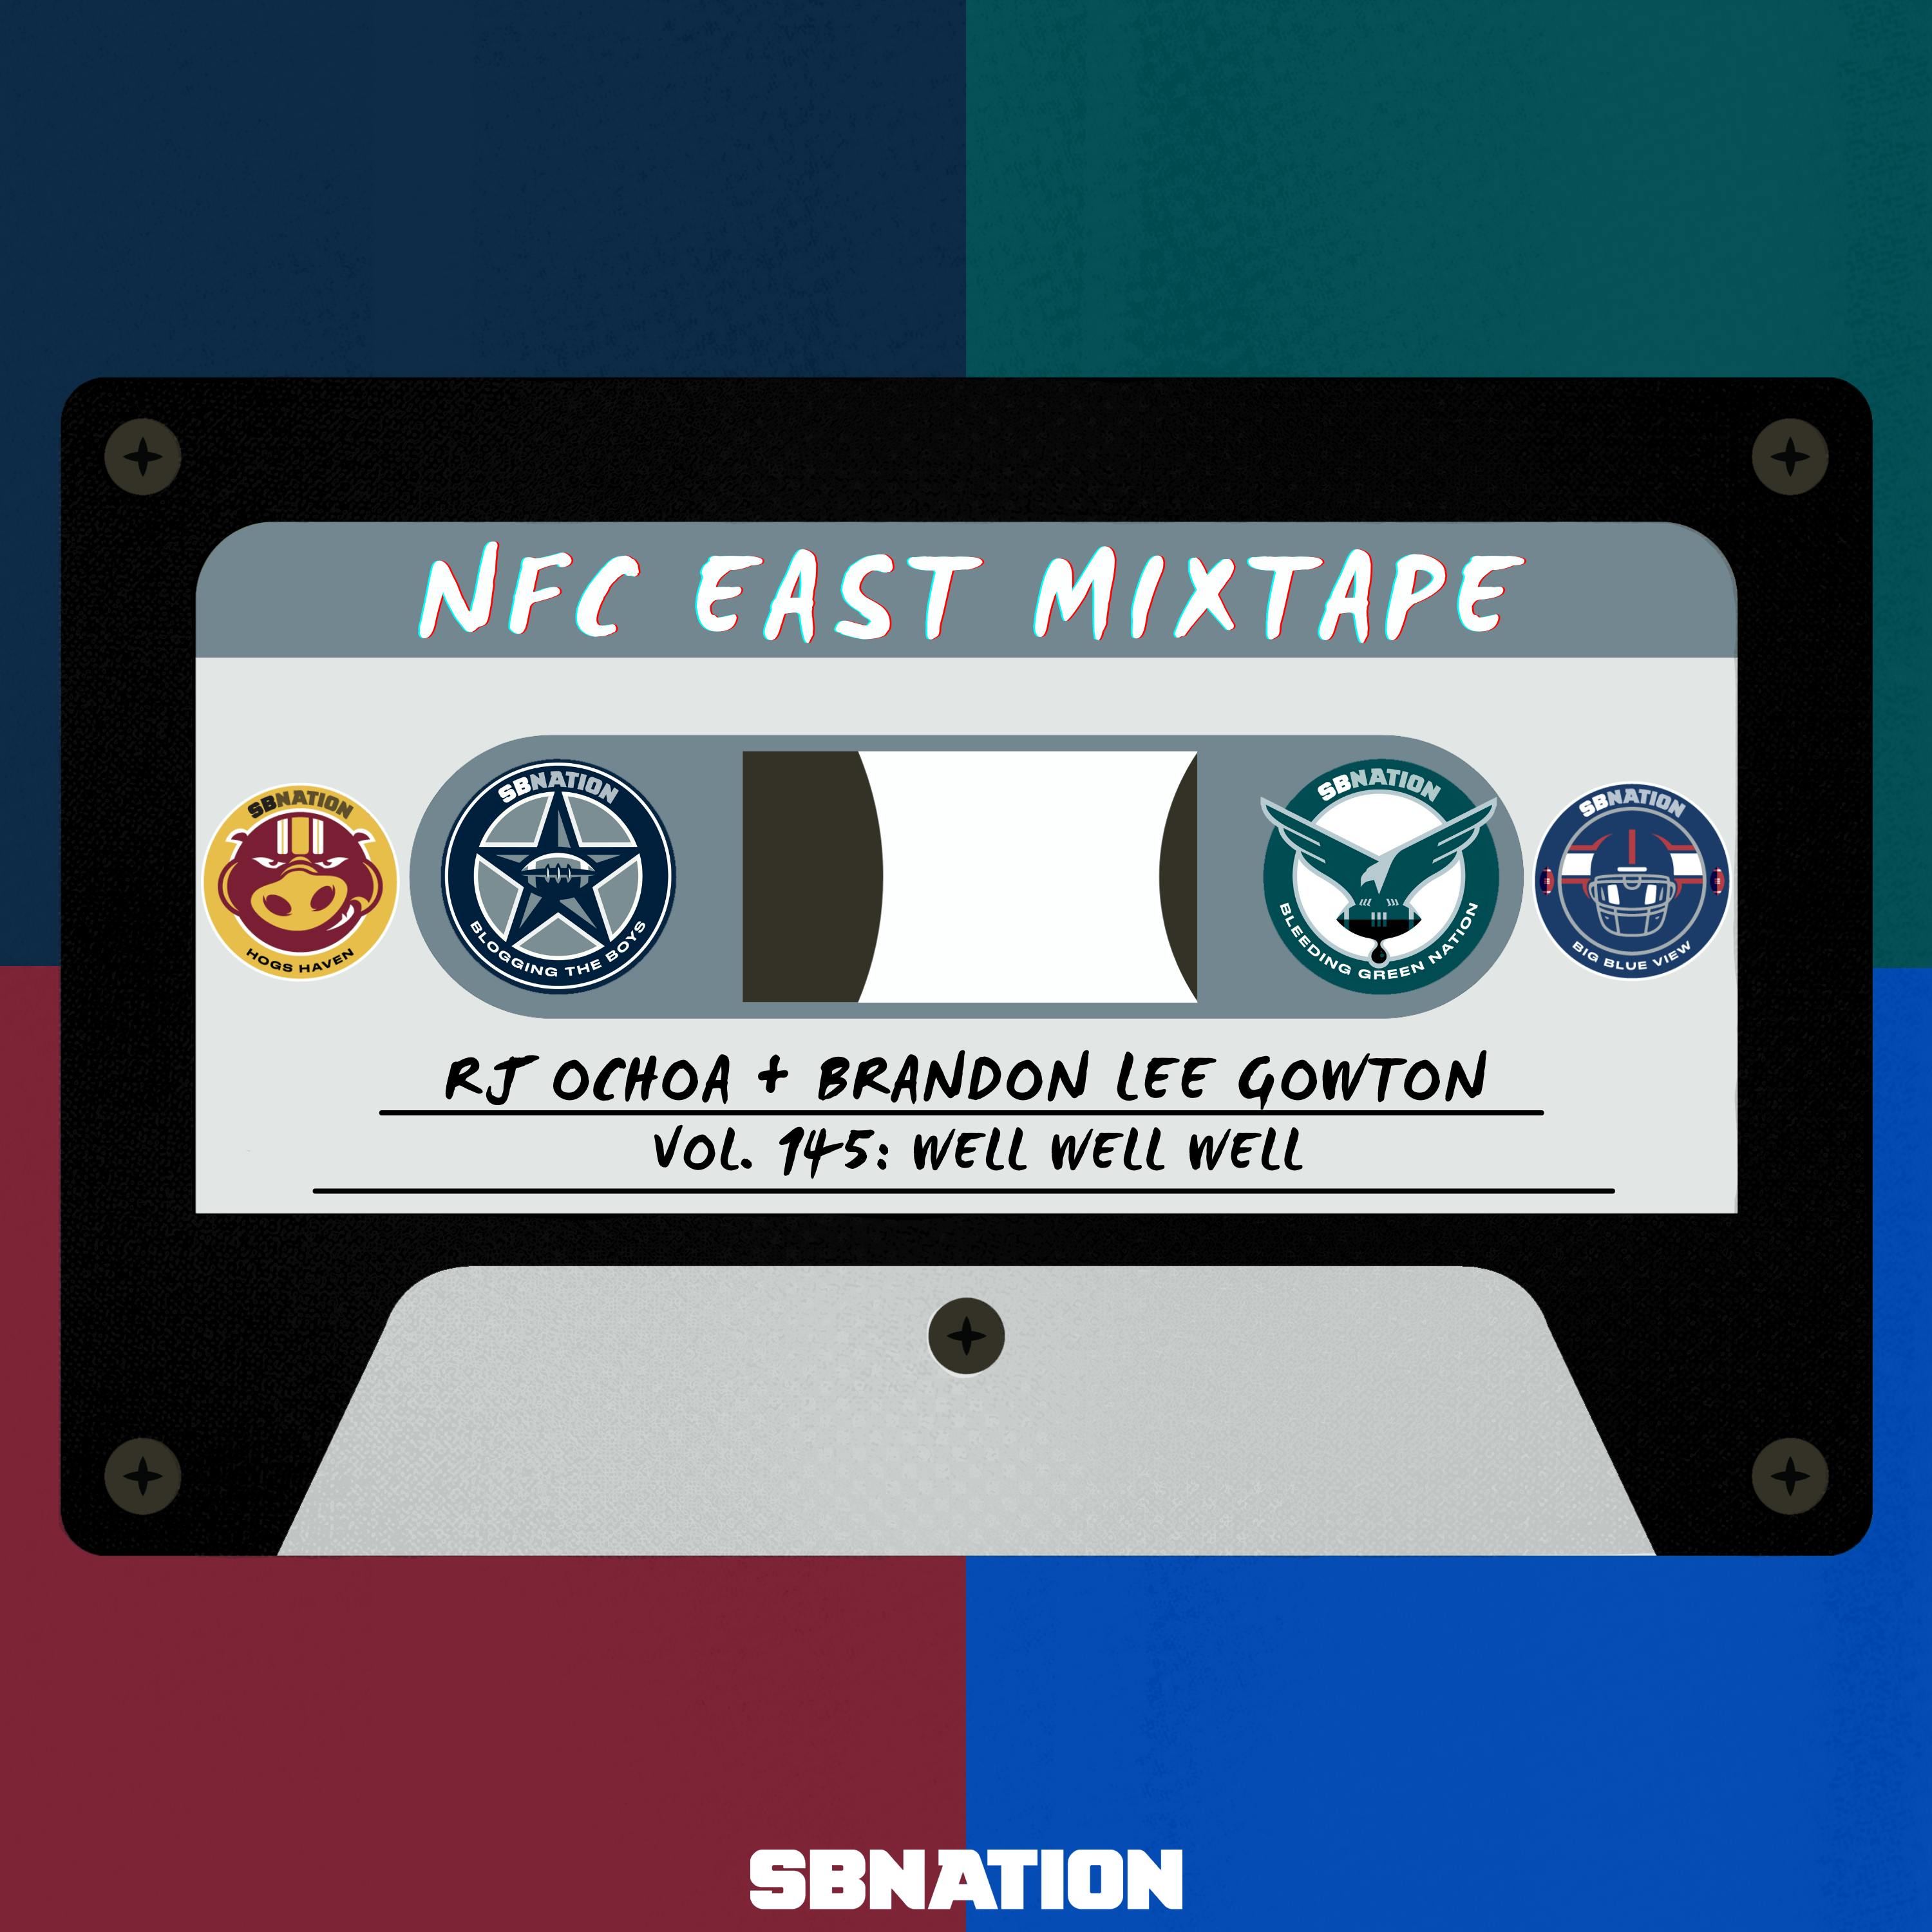 NFC East Mixtape Vol.145: Well well well